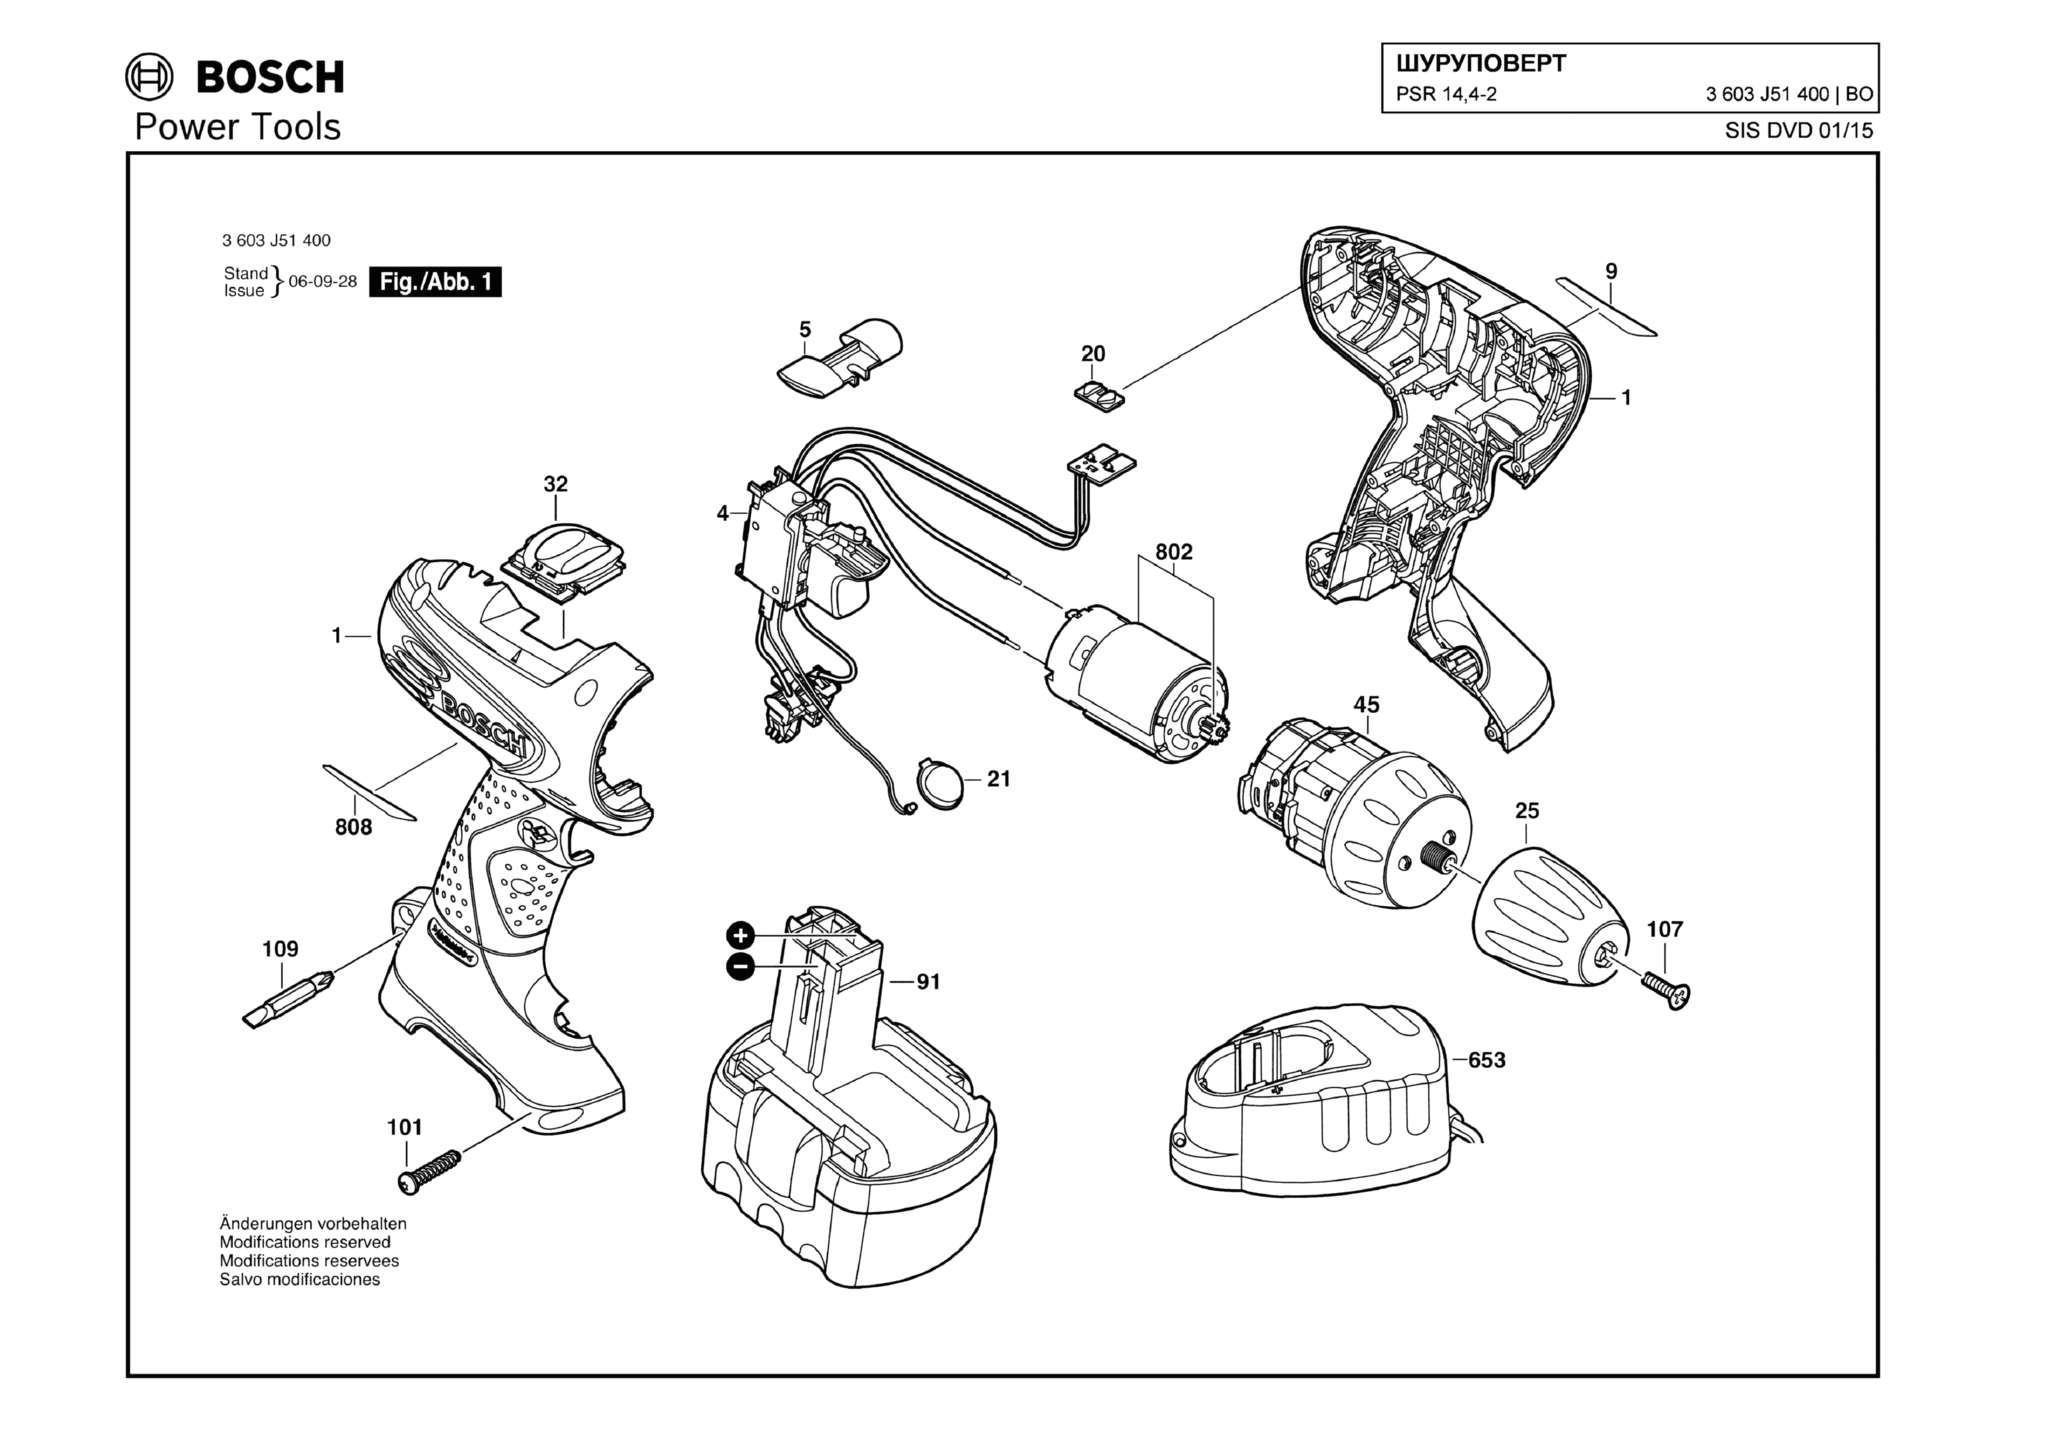 Запчасти, схема и деталировка Bosch PSR 14,4-2 (ТИП 3603J51400)